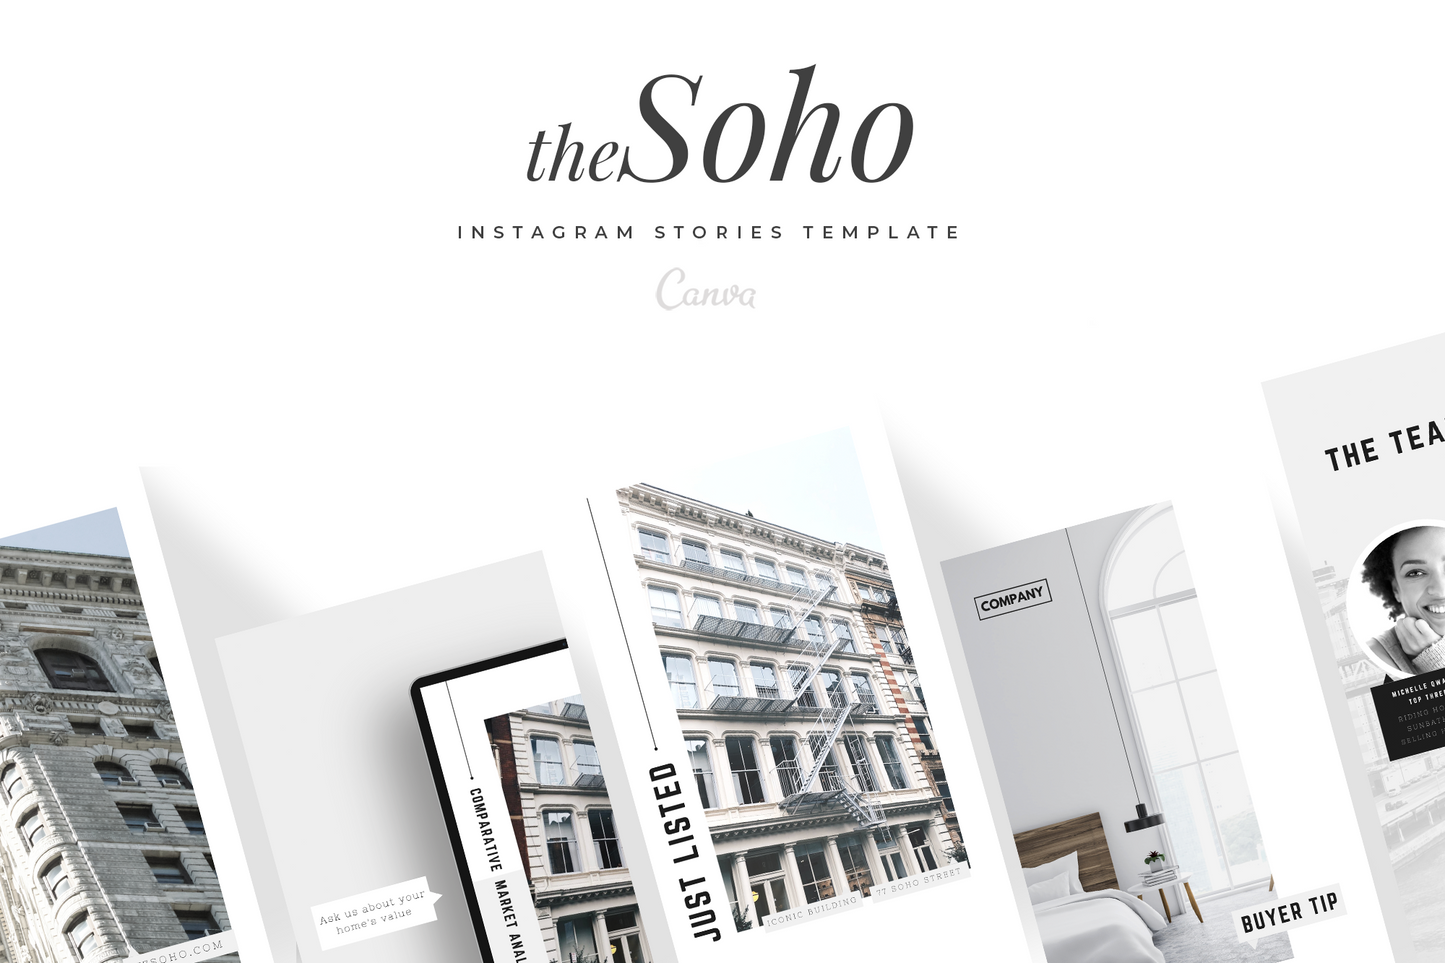 "The Soho" Marketing Bundle